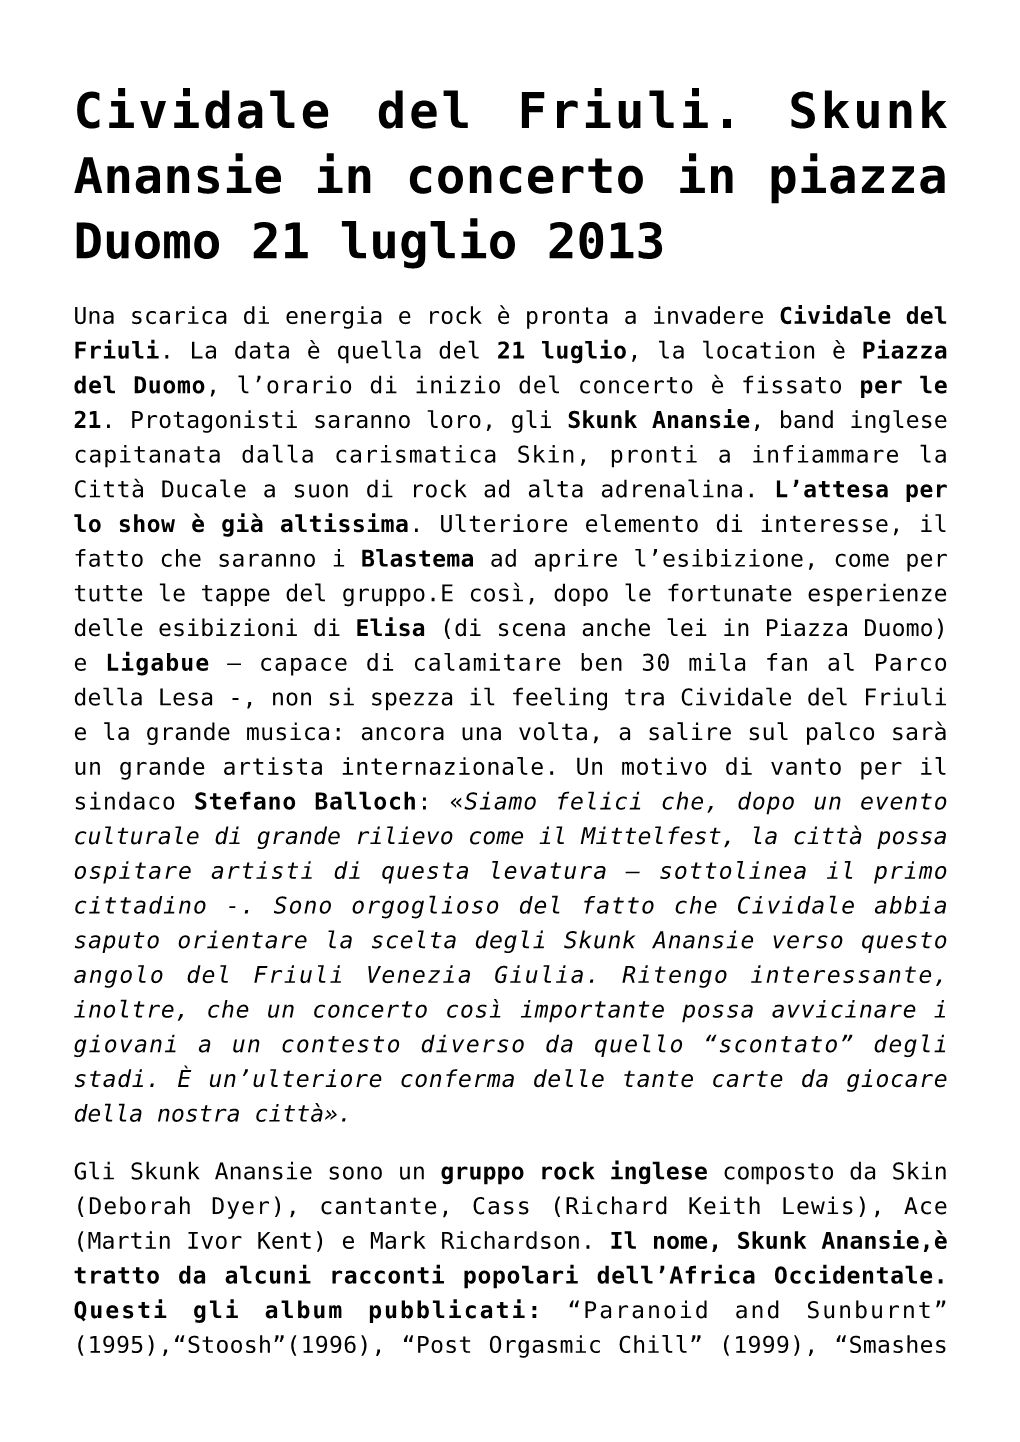 Cividale Del Friuli. Skunk Anansie in Concerto in Piazza Duomo 21 Luglio 2013